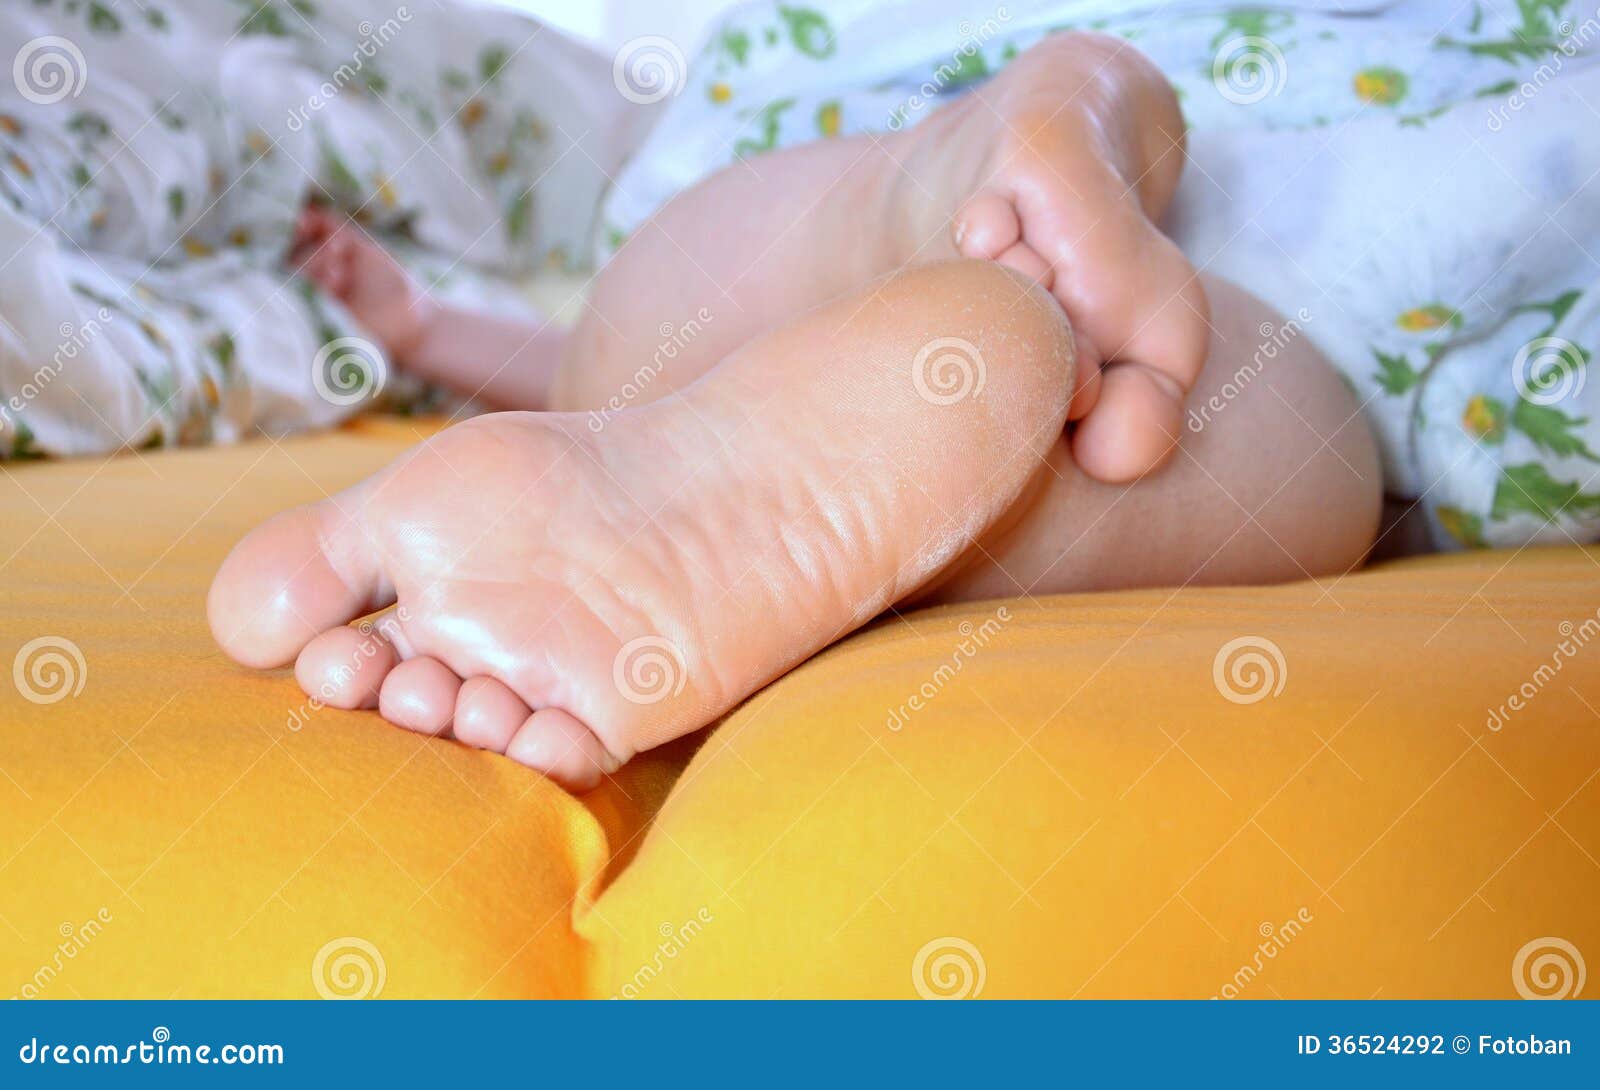 Спящие ноги жены. Ступни спящих женщин. Женские стопы спящей. Пятки спящей женщины.